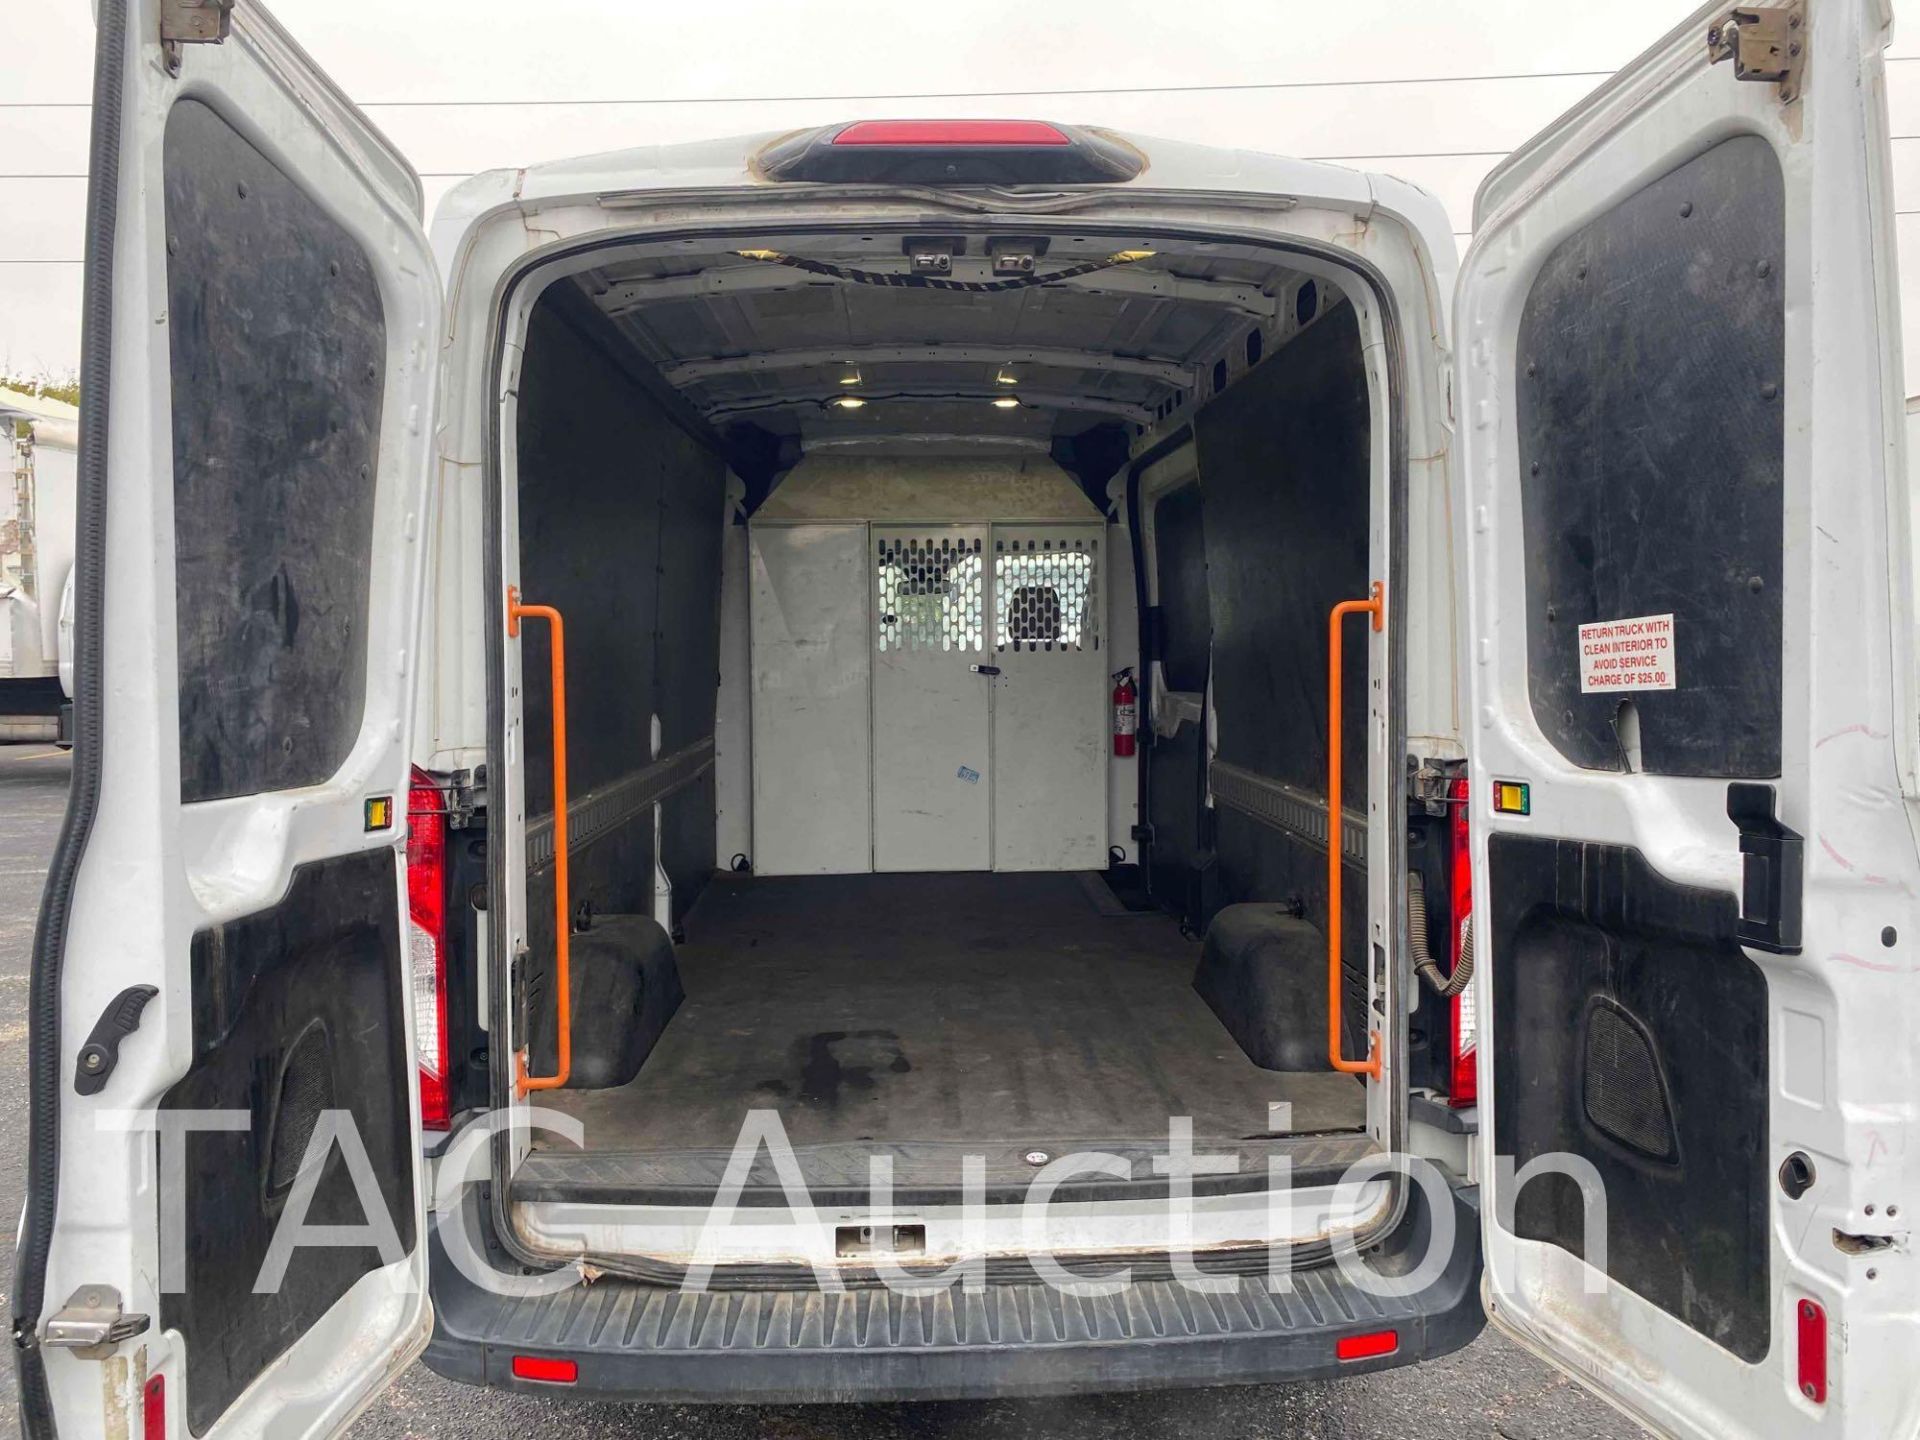 2018 Ford Transit 150 Cargo Van - Image 7 of 47